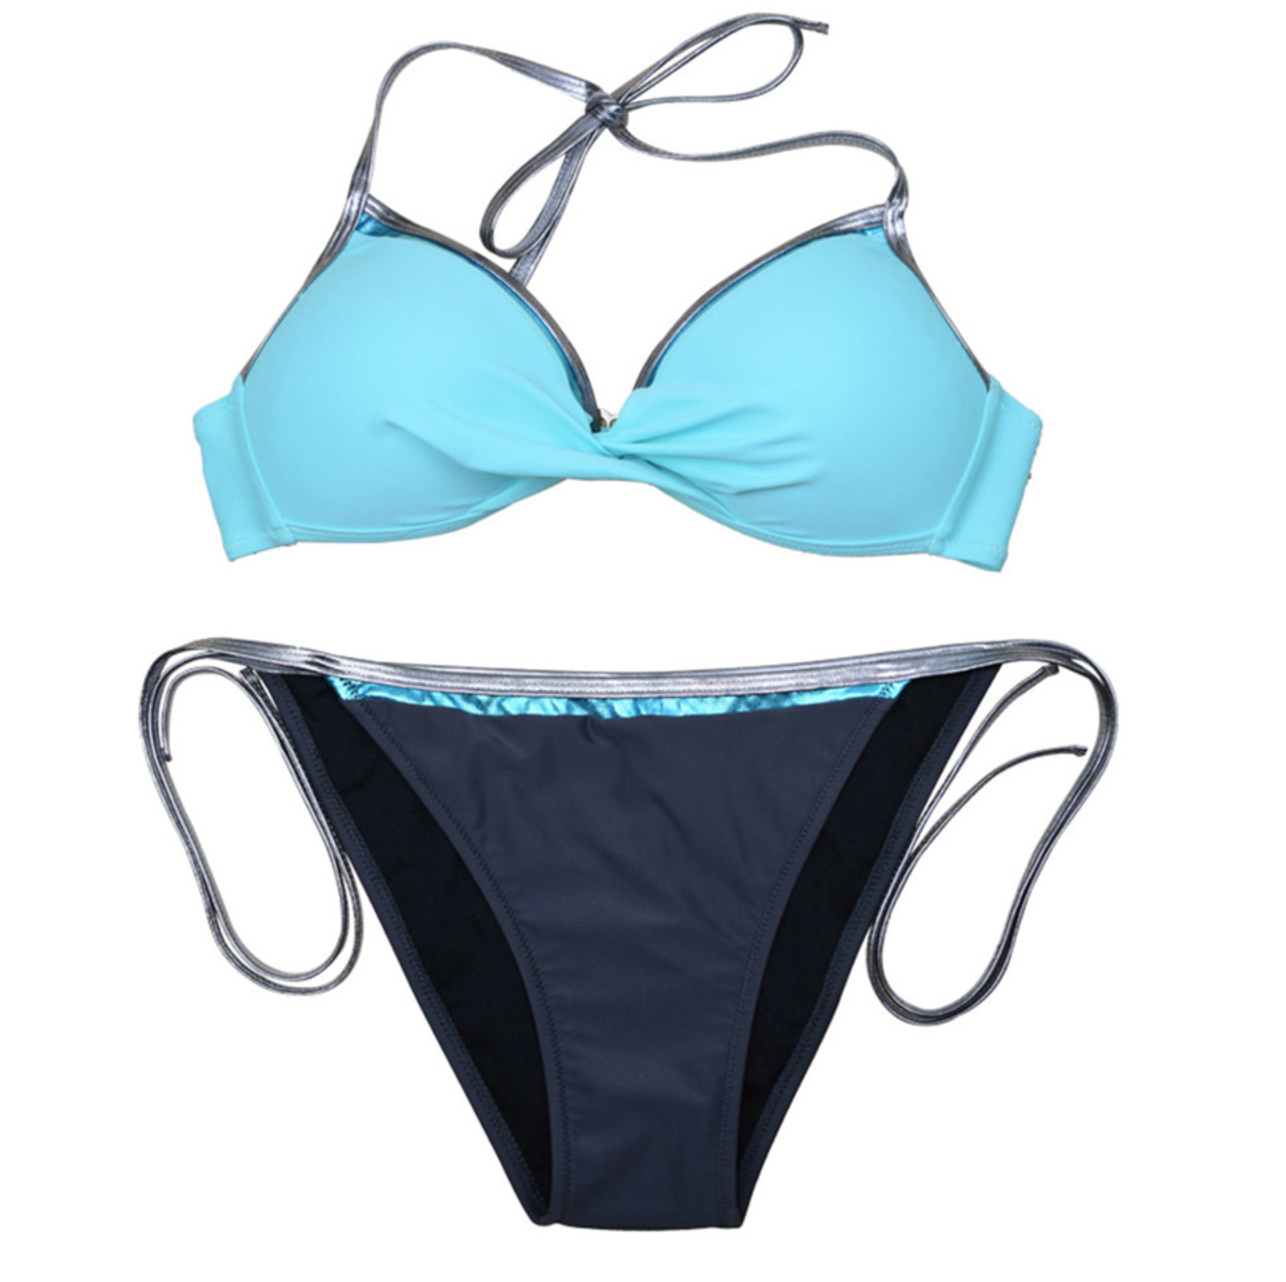 Bleu turquoise - Maillot de bain push up brésilien - 6 couleurs au choix - S au XXL